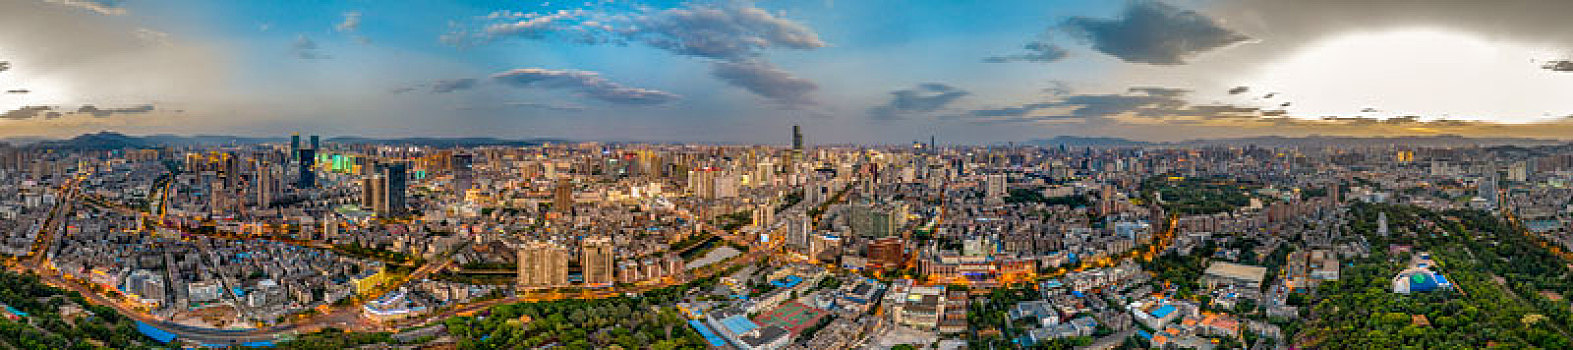 原创,云南昆明市区高空航拍合成全景图之三